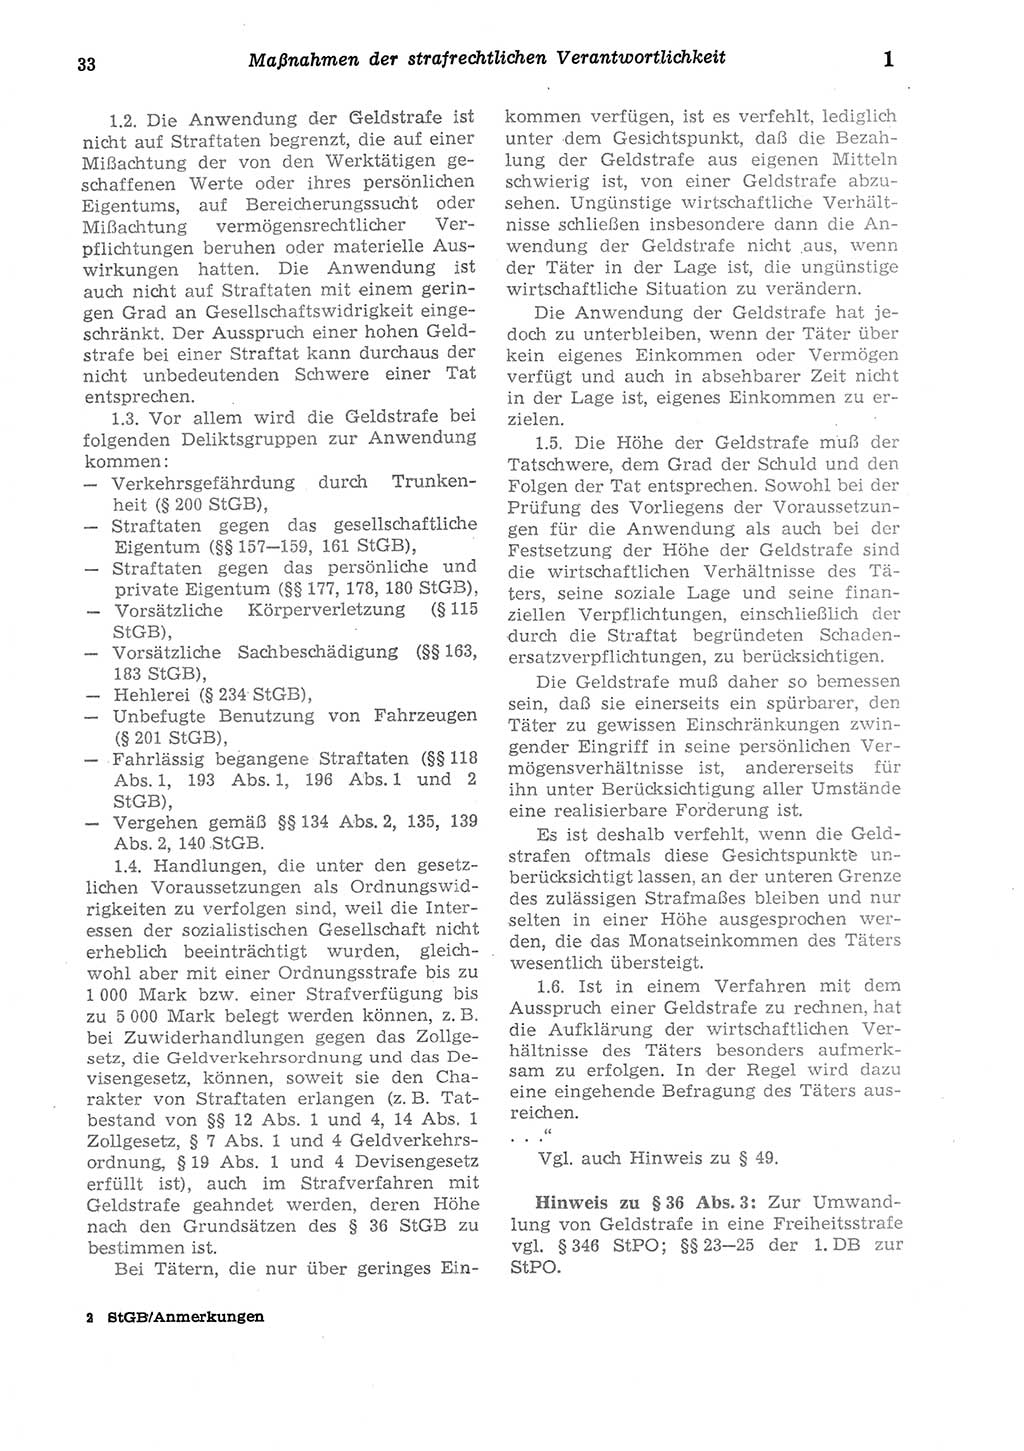 Strafgesetzbuch (StGB) der Deutschen Demokratischen Republik (DDR) und angrenzende Gesetze und Bestimmungen 1975, Seite 33 (StGB DDR Ges. Best. 1975, S. 33)